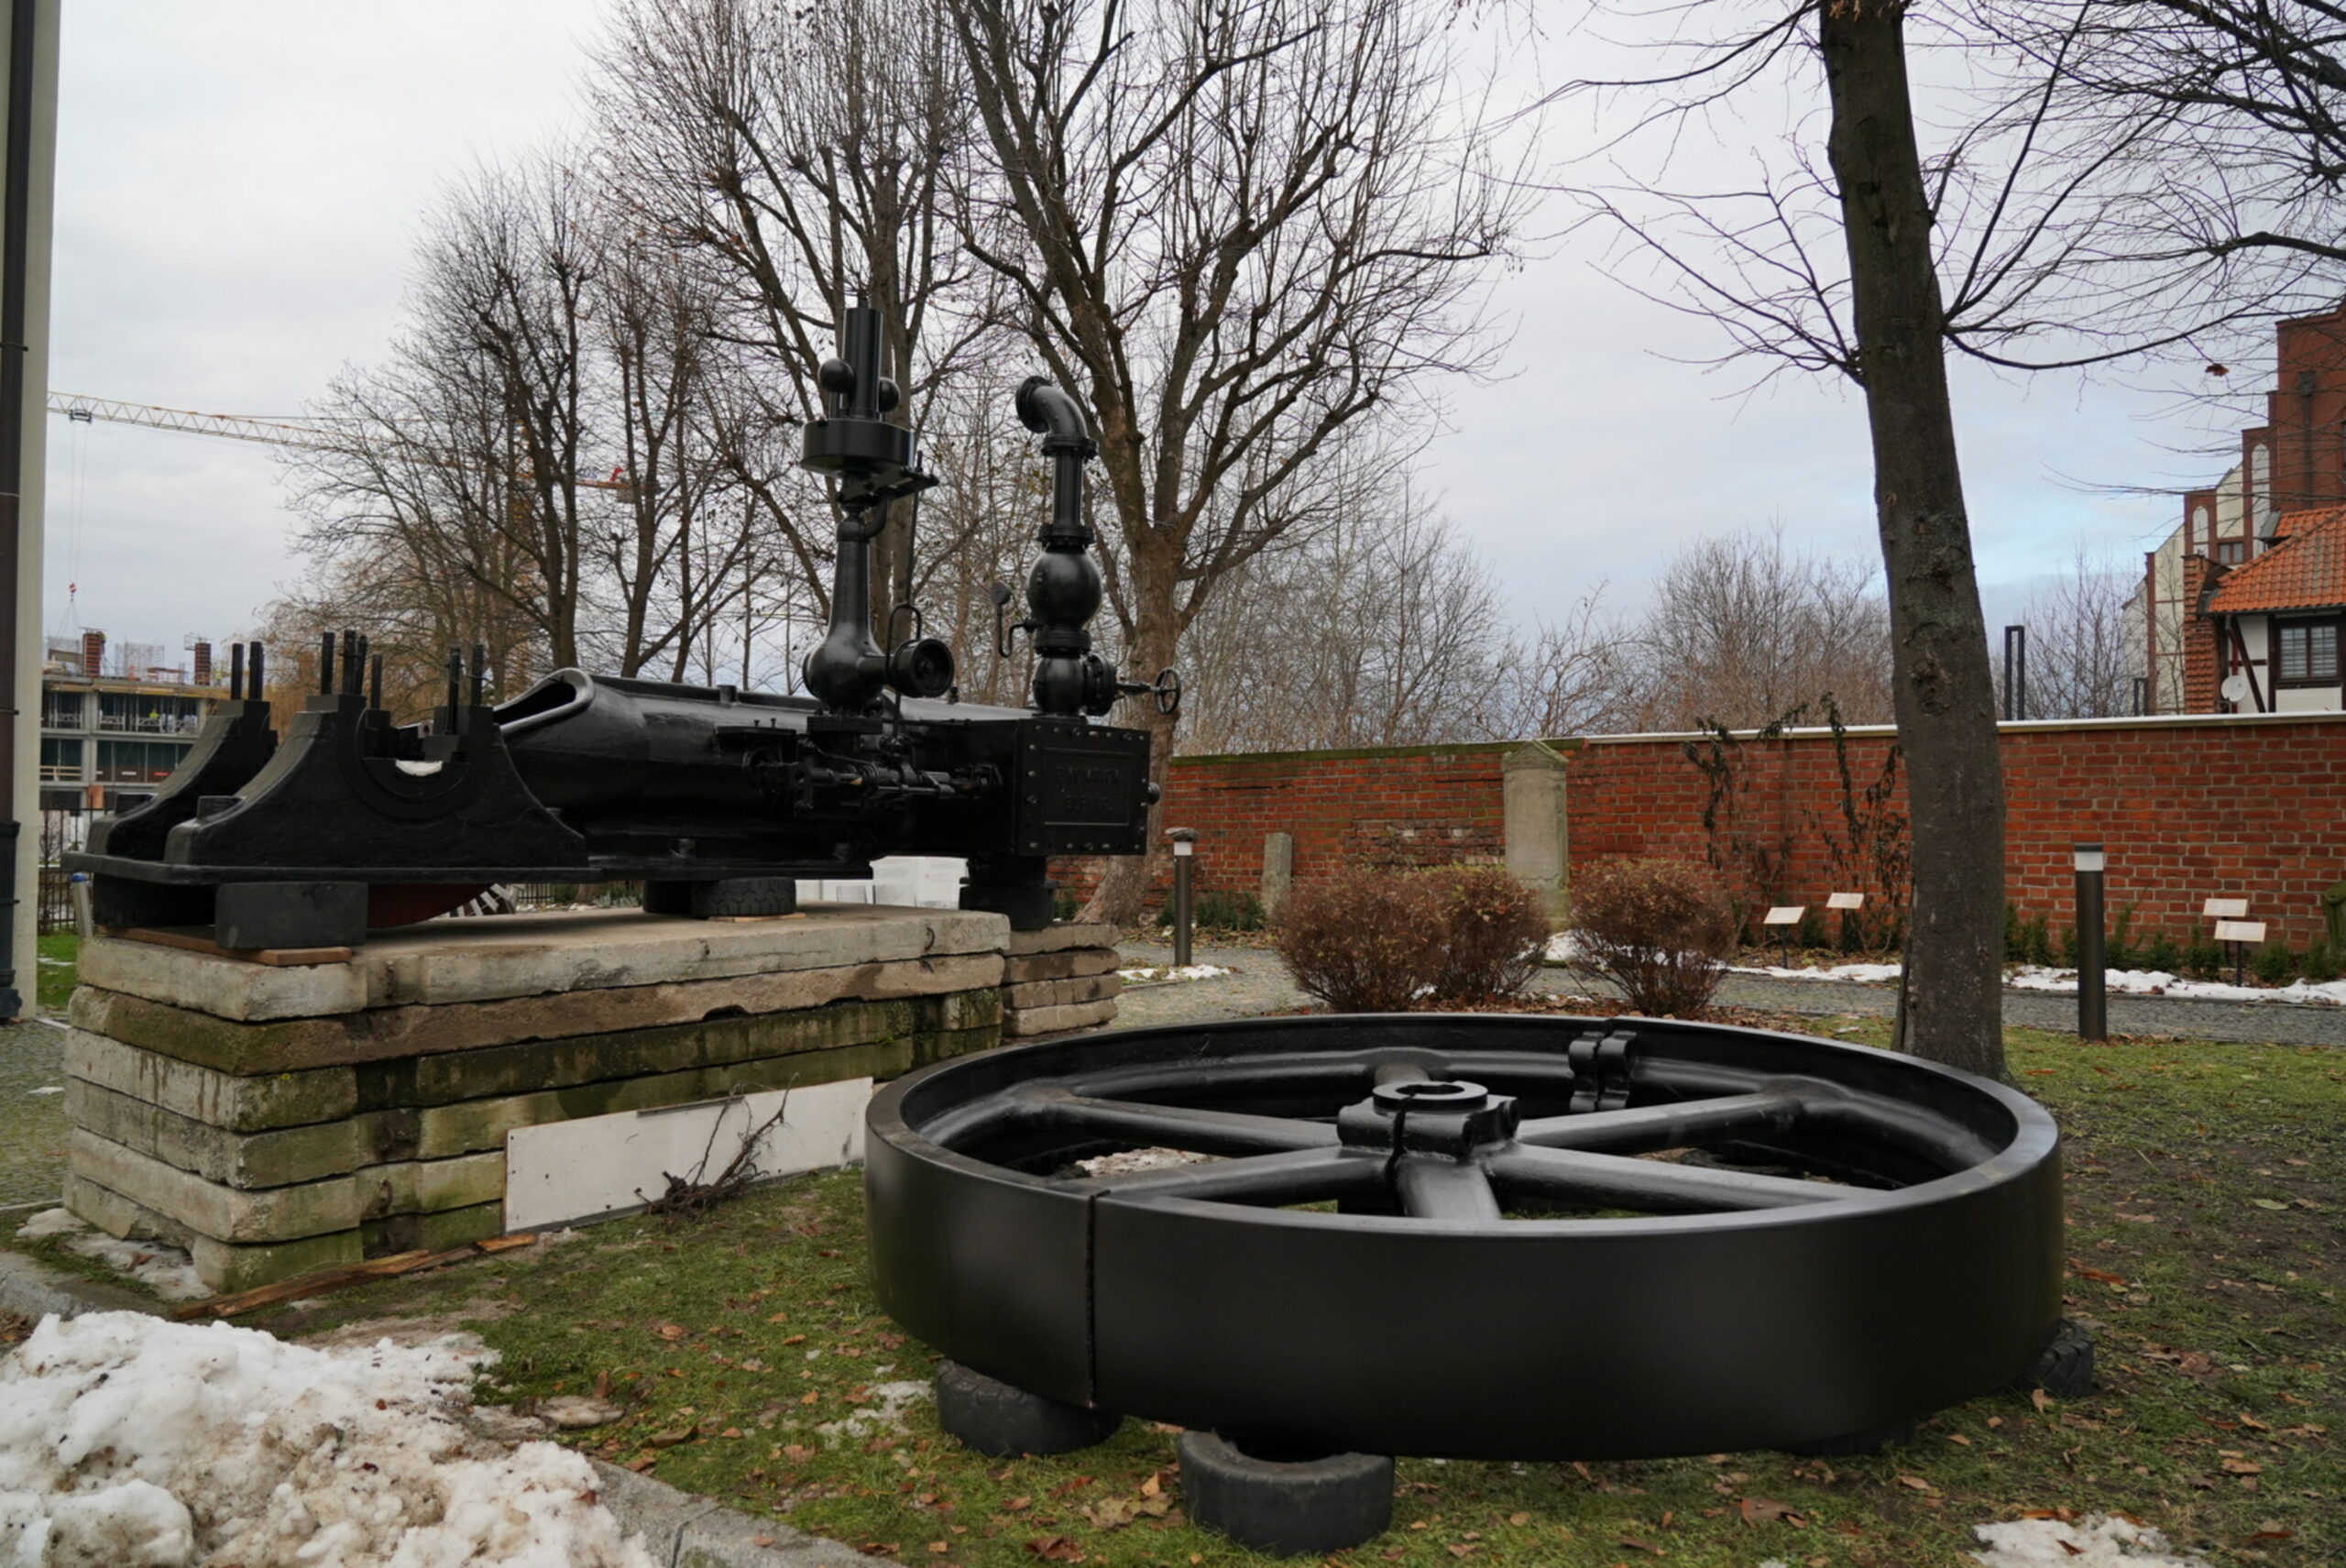 Zdjęcie przedstawia maszynę parową stojącą na kilku położonych jedna na drugiej płytach betonowych. Obok na oponach położono masywne, duże stalowe koło. Wszystko pomalowane na czarno.